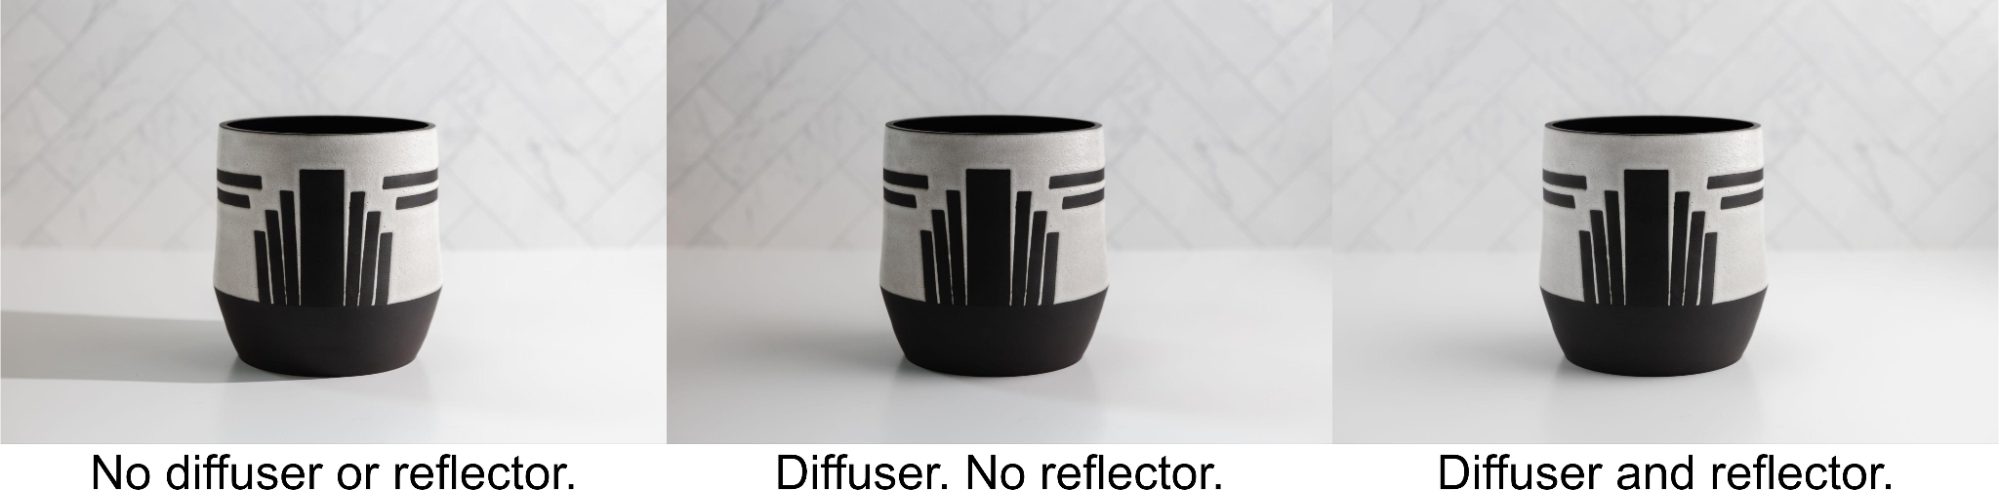 花瓶の製品写真 3 枚: ディフューザー/リフレクターなし (左)。 ディフューザー/リフレクターなし (中央)。 ディフューザーとリフレクター（右）